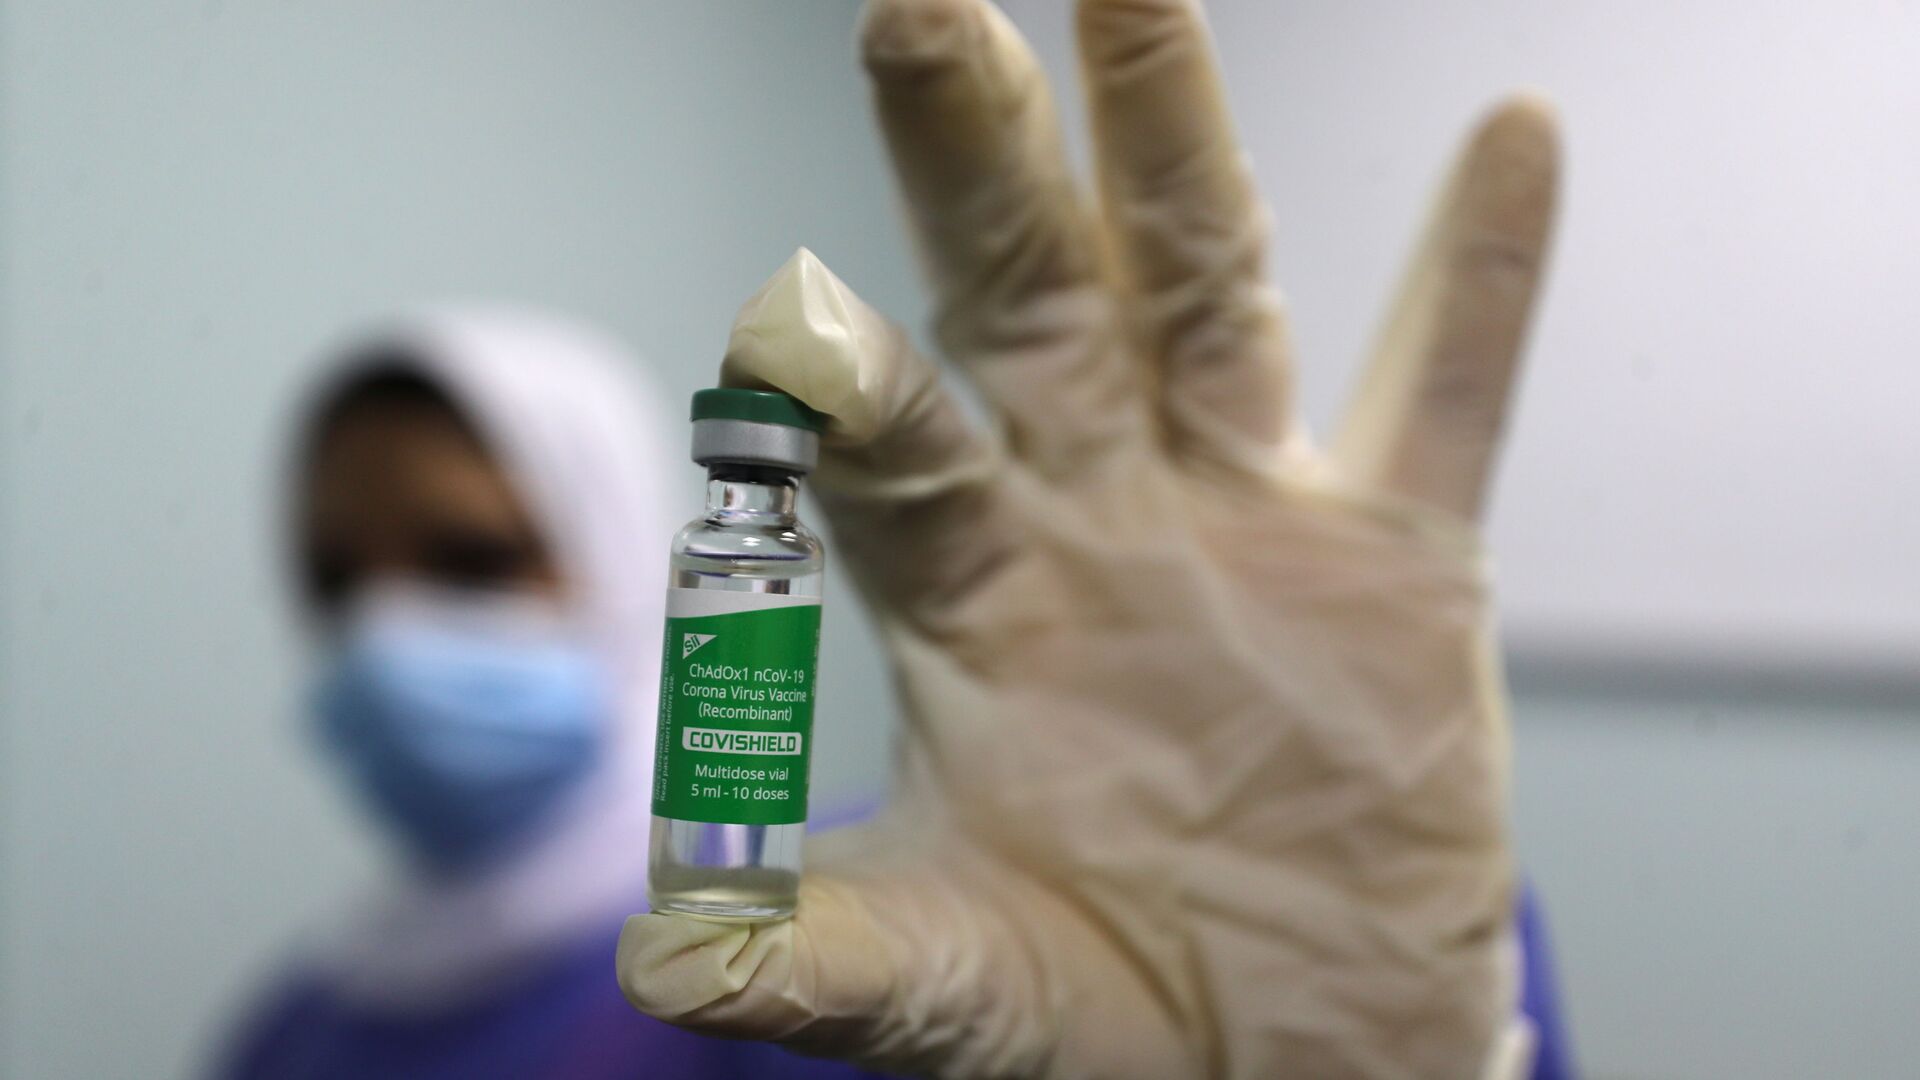 بدء تطعيم واسع النطاق في مصر ضد فيروس كورونا (كوفيد-19)، القاهرة، 4 مارس 2021 - سبوتنيك عربي, 1920, 16.06.2021